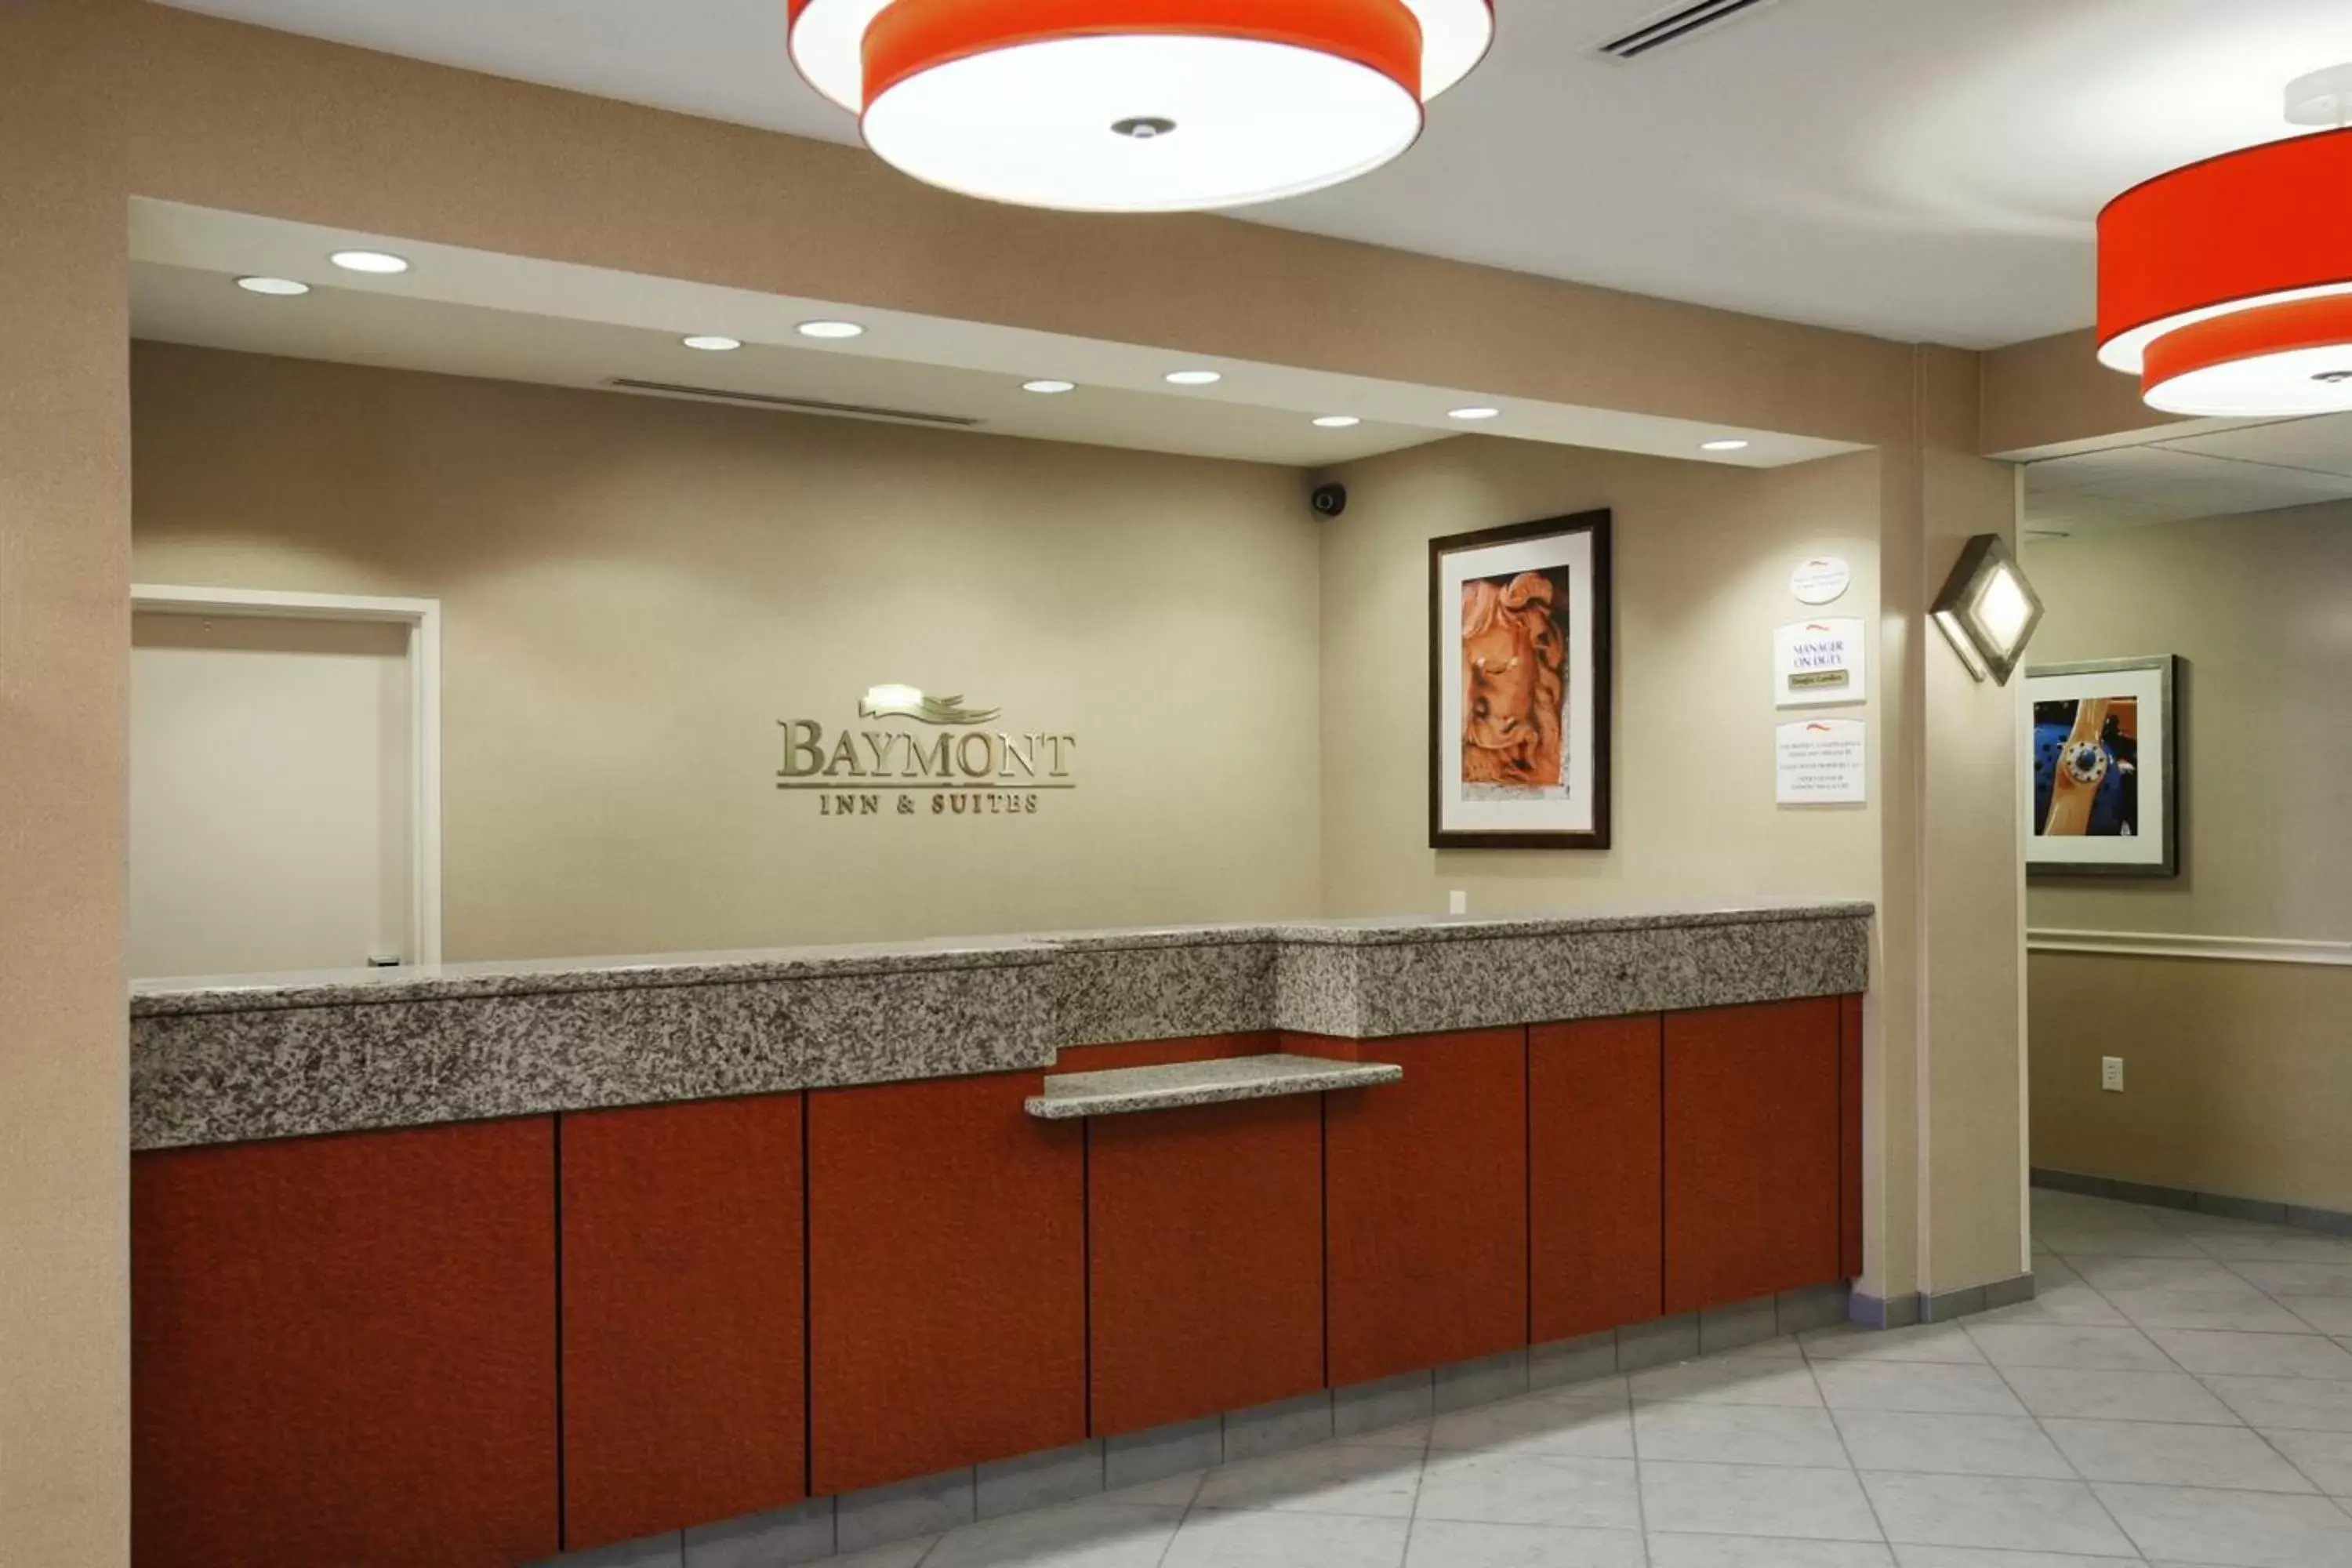 Lobby or reception, Lobby/Reception in Baymont by Wyndham Denver International Airport